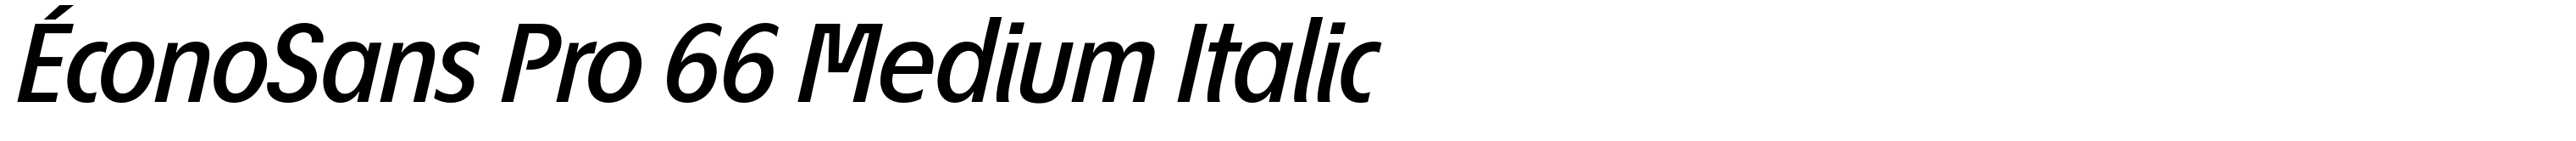 ÉconoSans Pro 66 Medium Italic